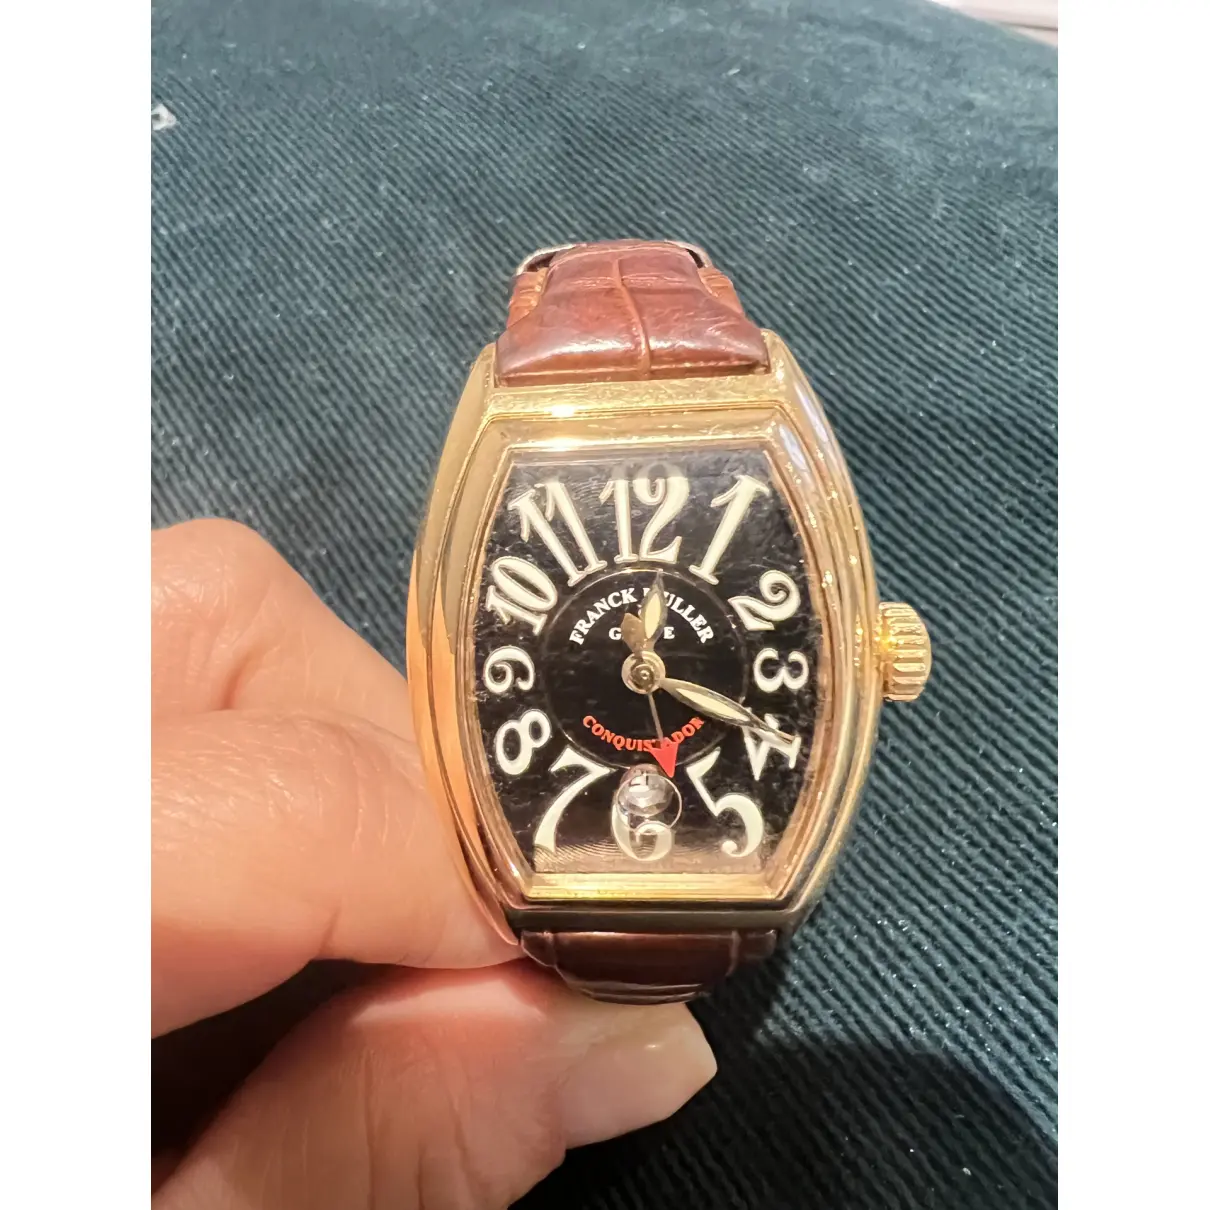 Buy Franck Muller Pink gold watch online